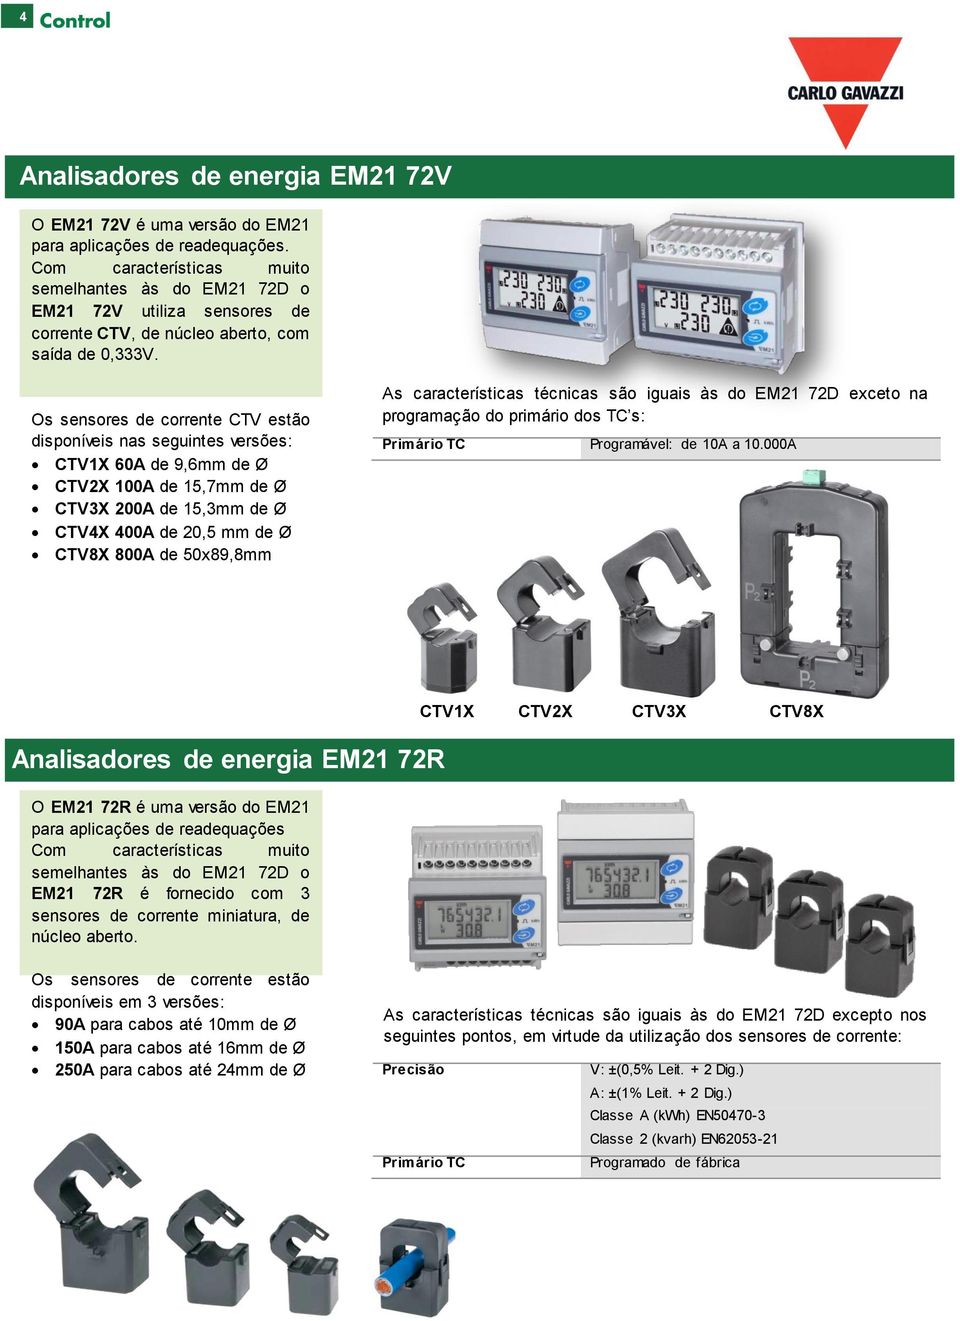 Os sensores de corrente CTV estão disponíveis nas seguintes versões: CTV1X 60A de 9,6mm de Ø CTV2X 100A de 15,7mm de Ø CTV3X 200A de 15,3mm de Ø CTV4X 400A de 20,5 mm de Ø CTV8X 800A de 50x89,8mm As